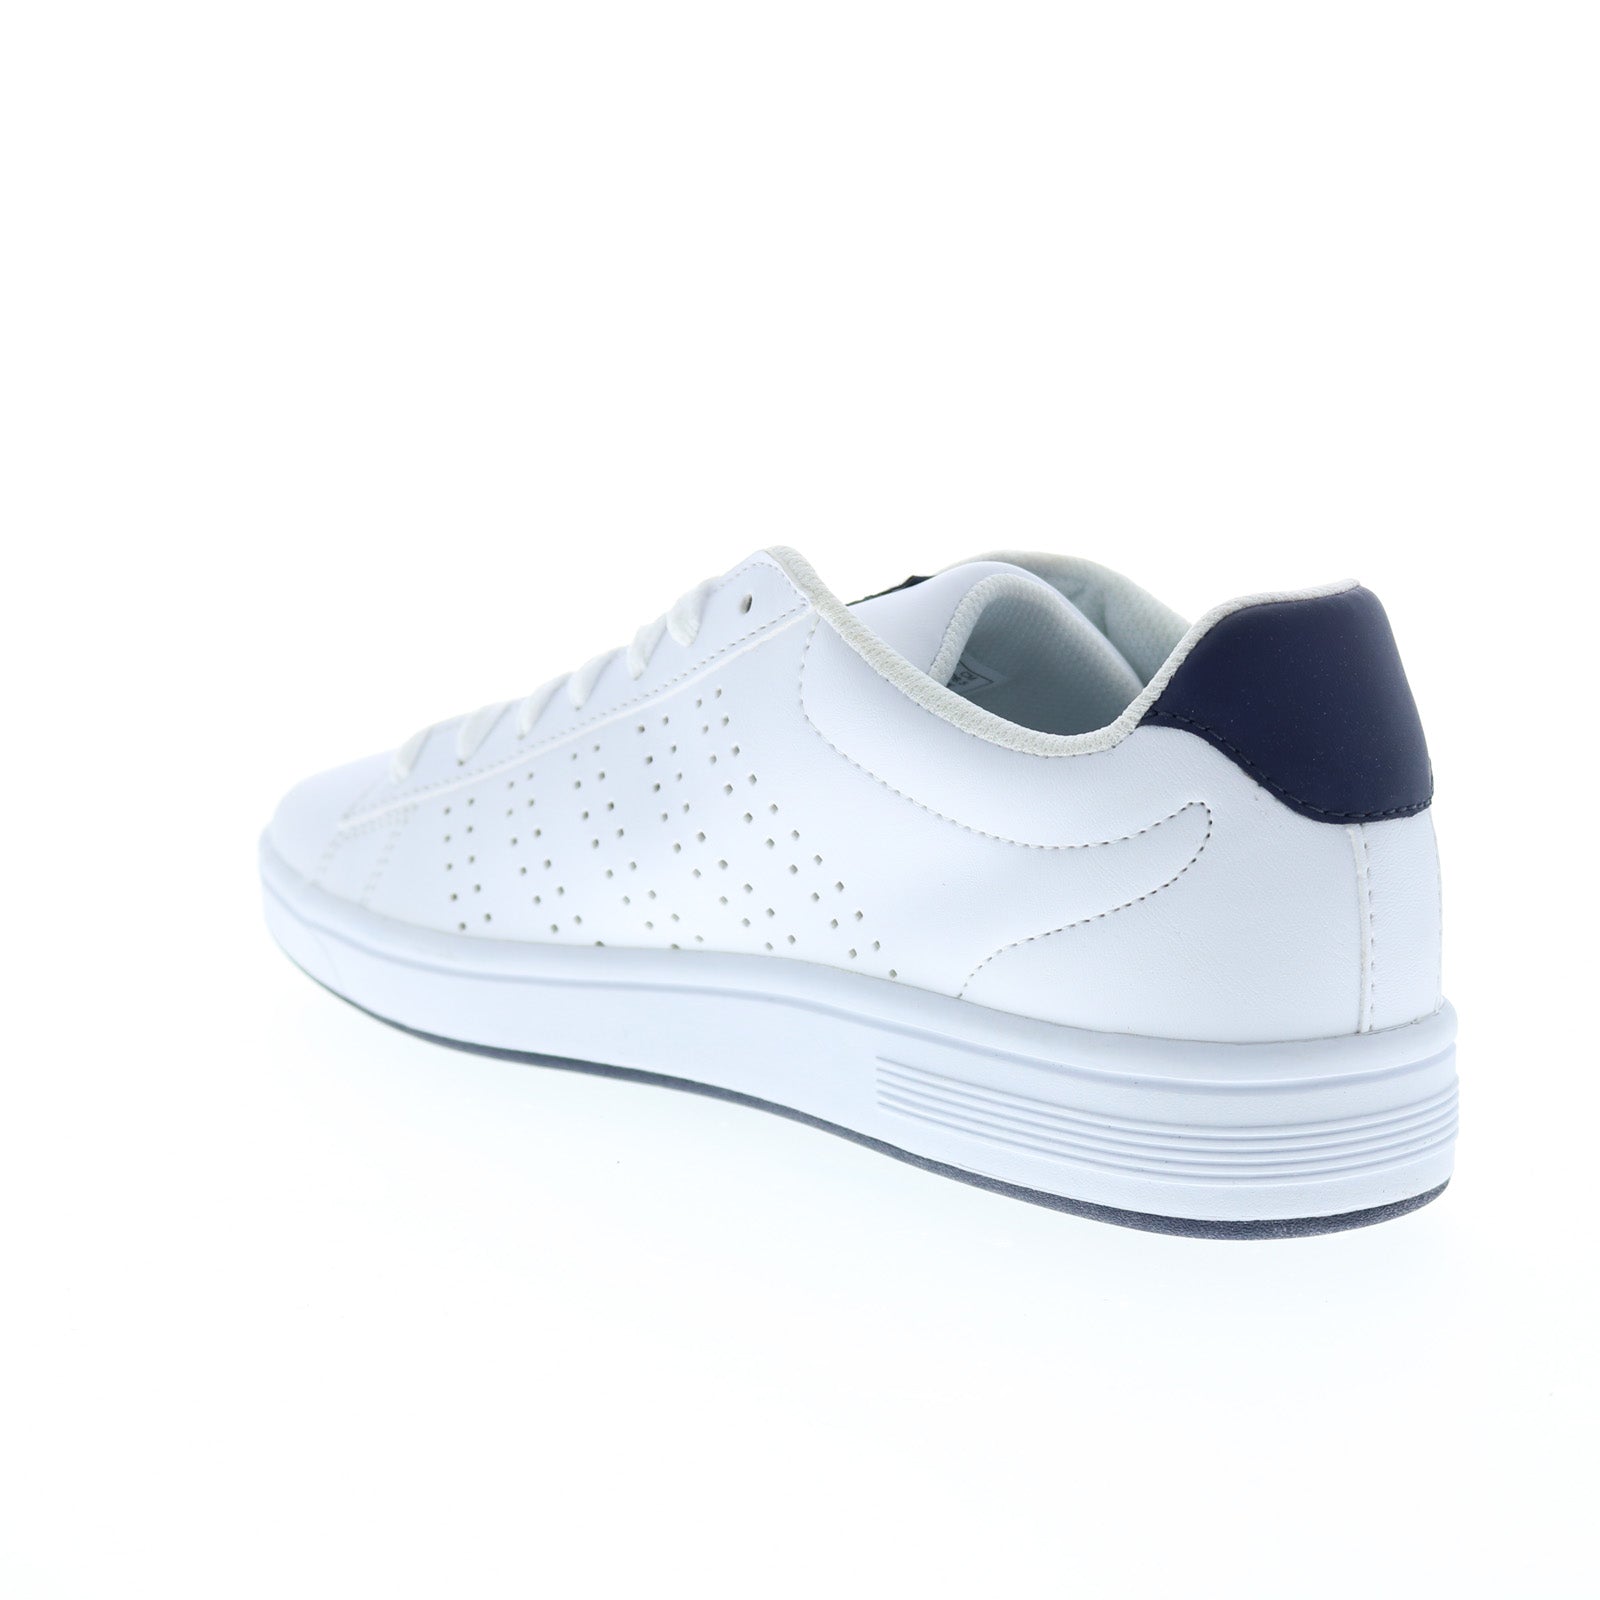 Encyclopedie voordeel Altaar K-Swiss Court Casper 05608-109-M Mens White Lifestyle Sneakers Shoes - Ruze  Shoes